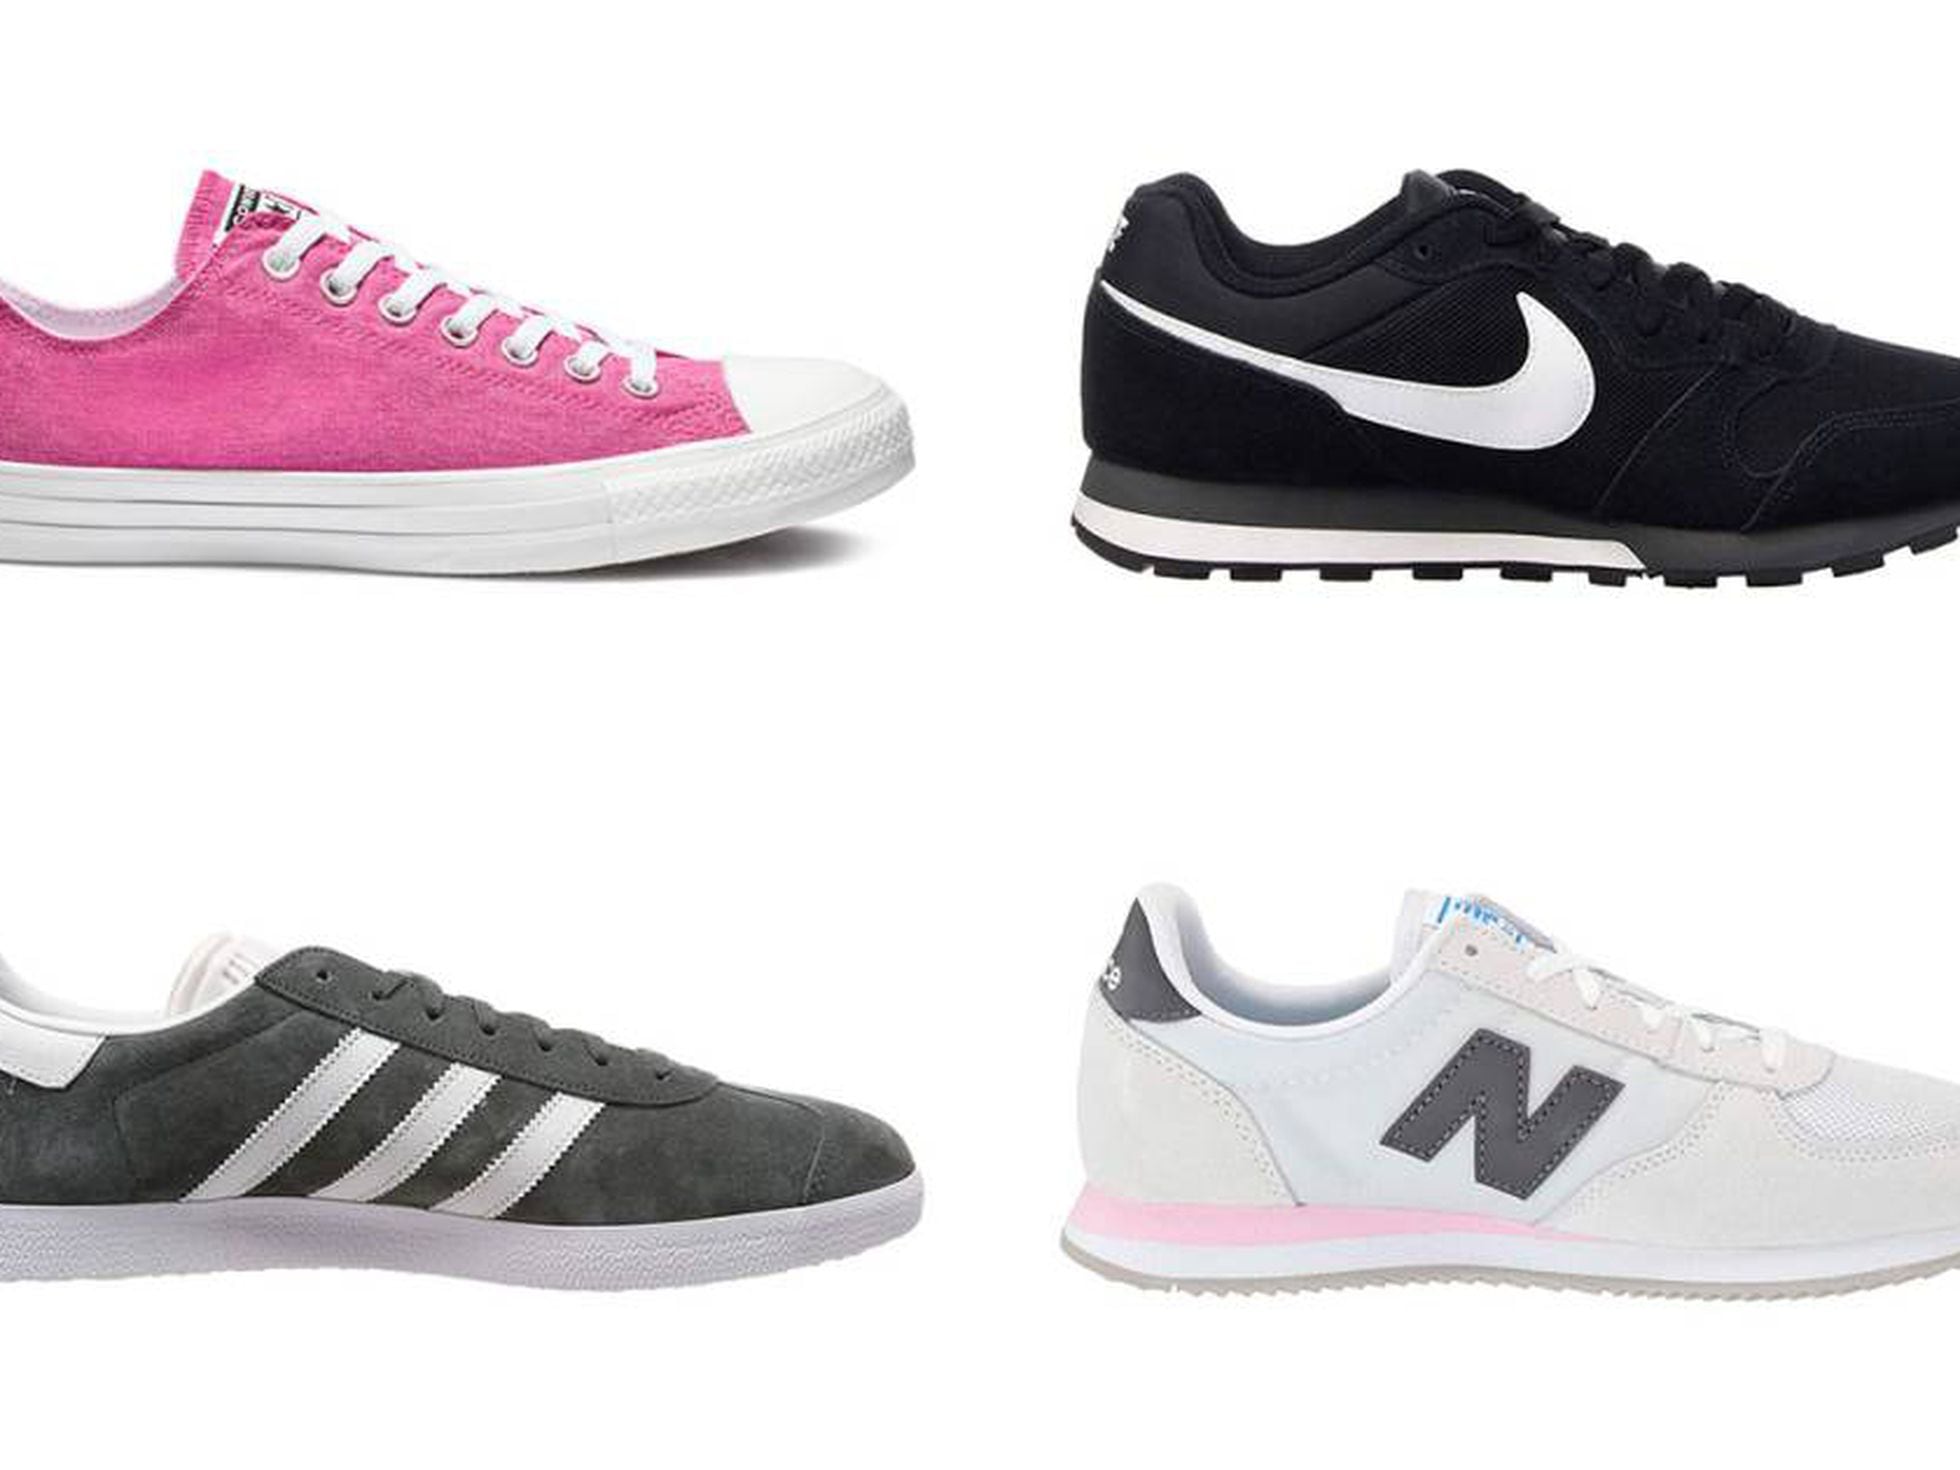 Las Nike MD Runner 2, las Balance 220 y otras grandes ofertas zapatillas | Escaparate EL PAÍS